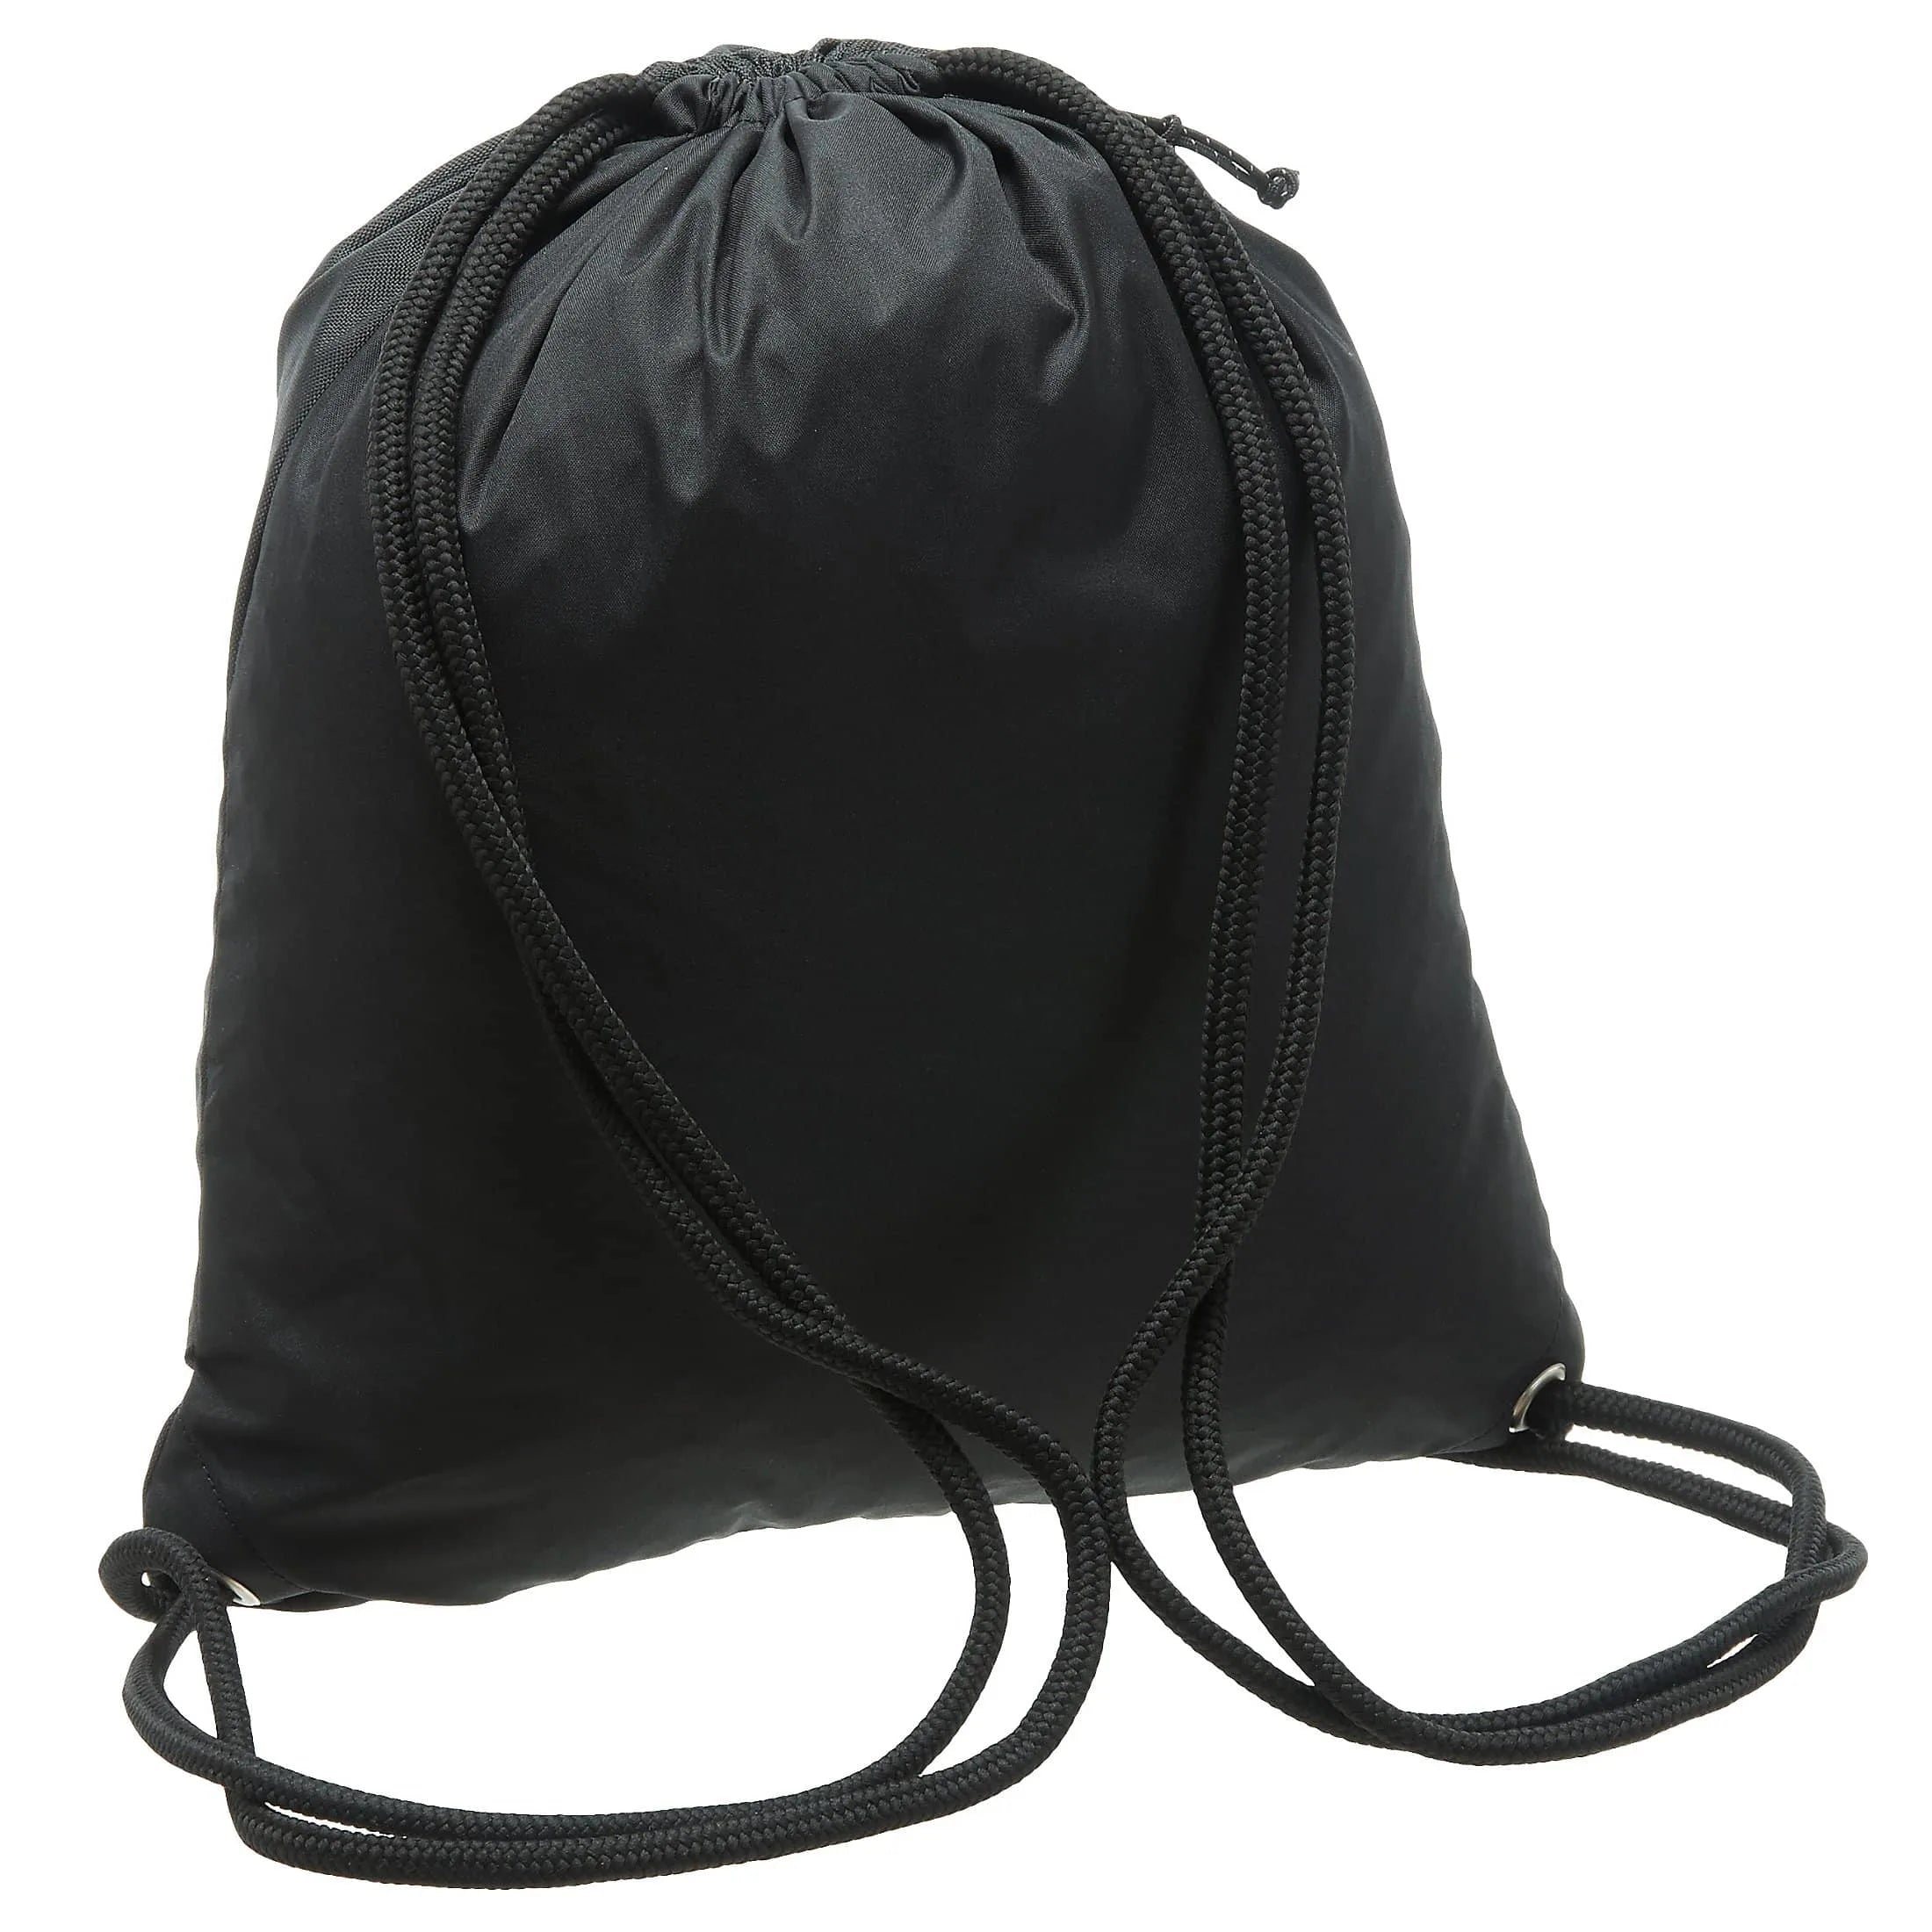 Puma Academy sports bag 43 cm - black